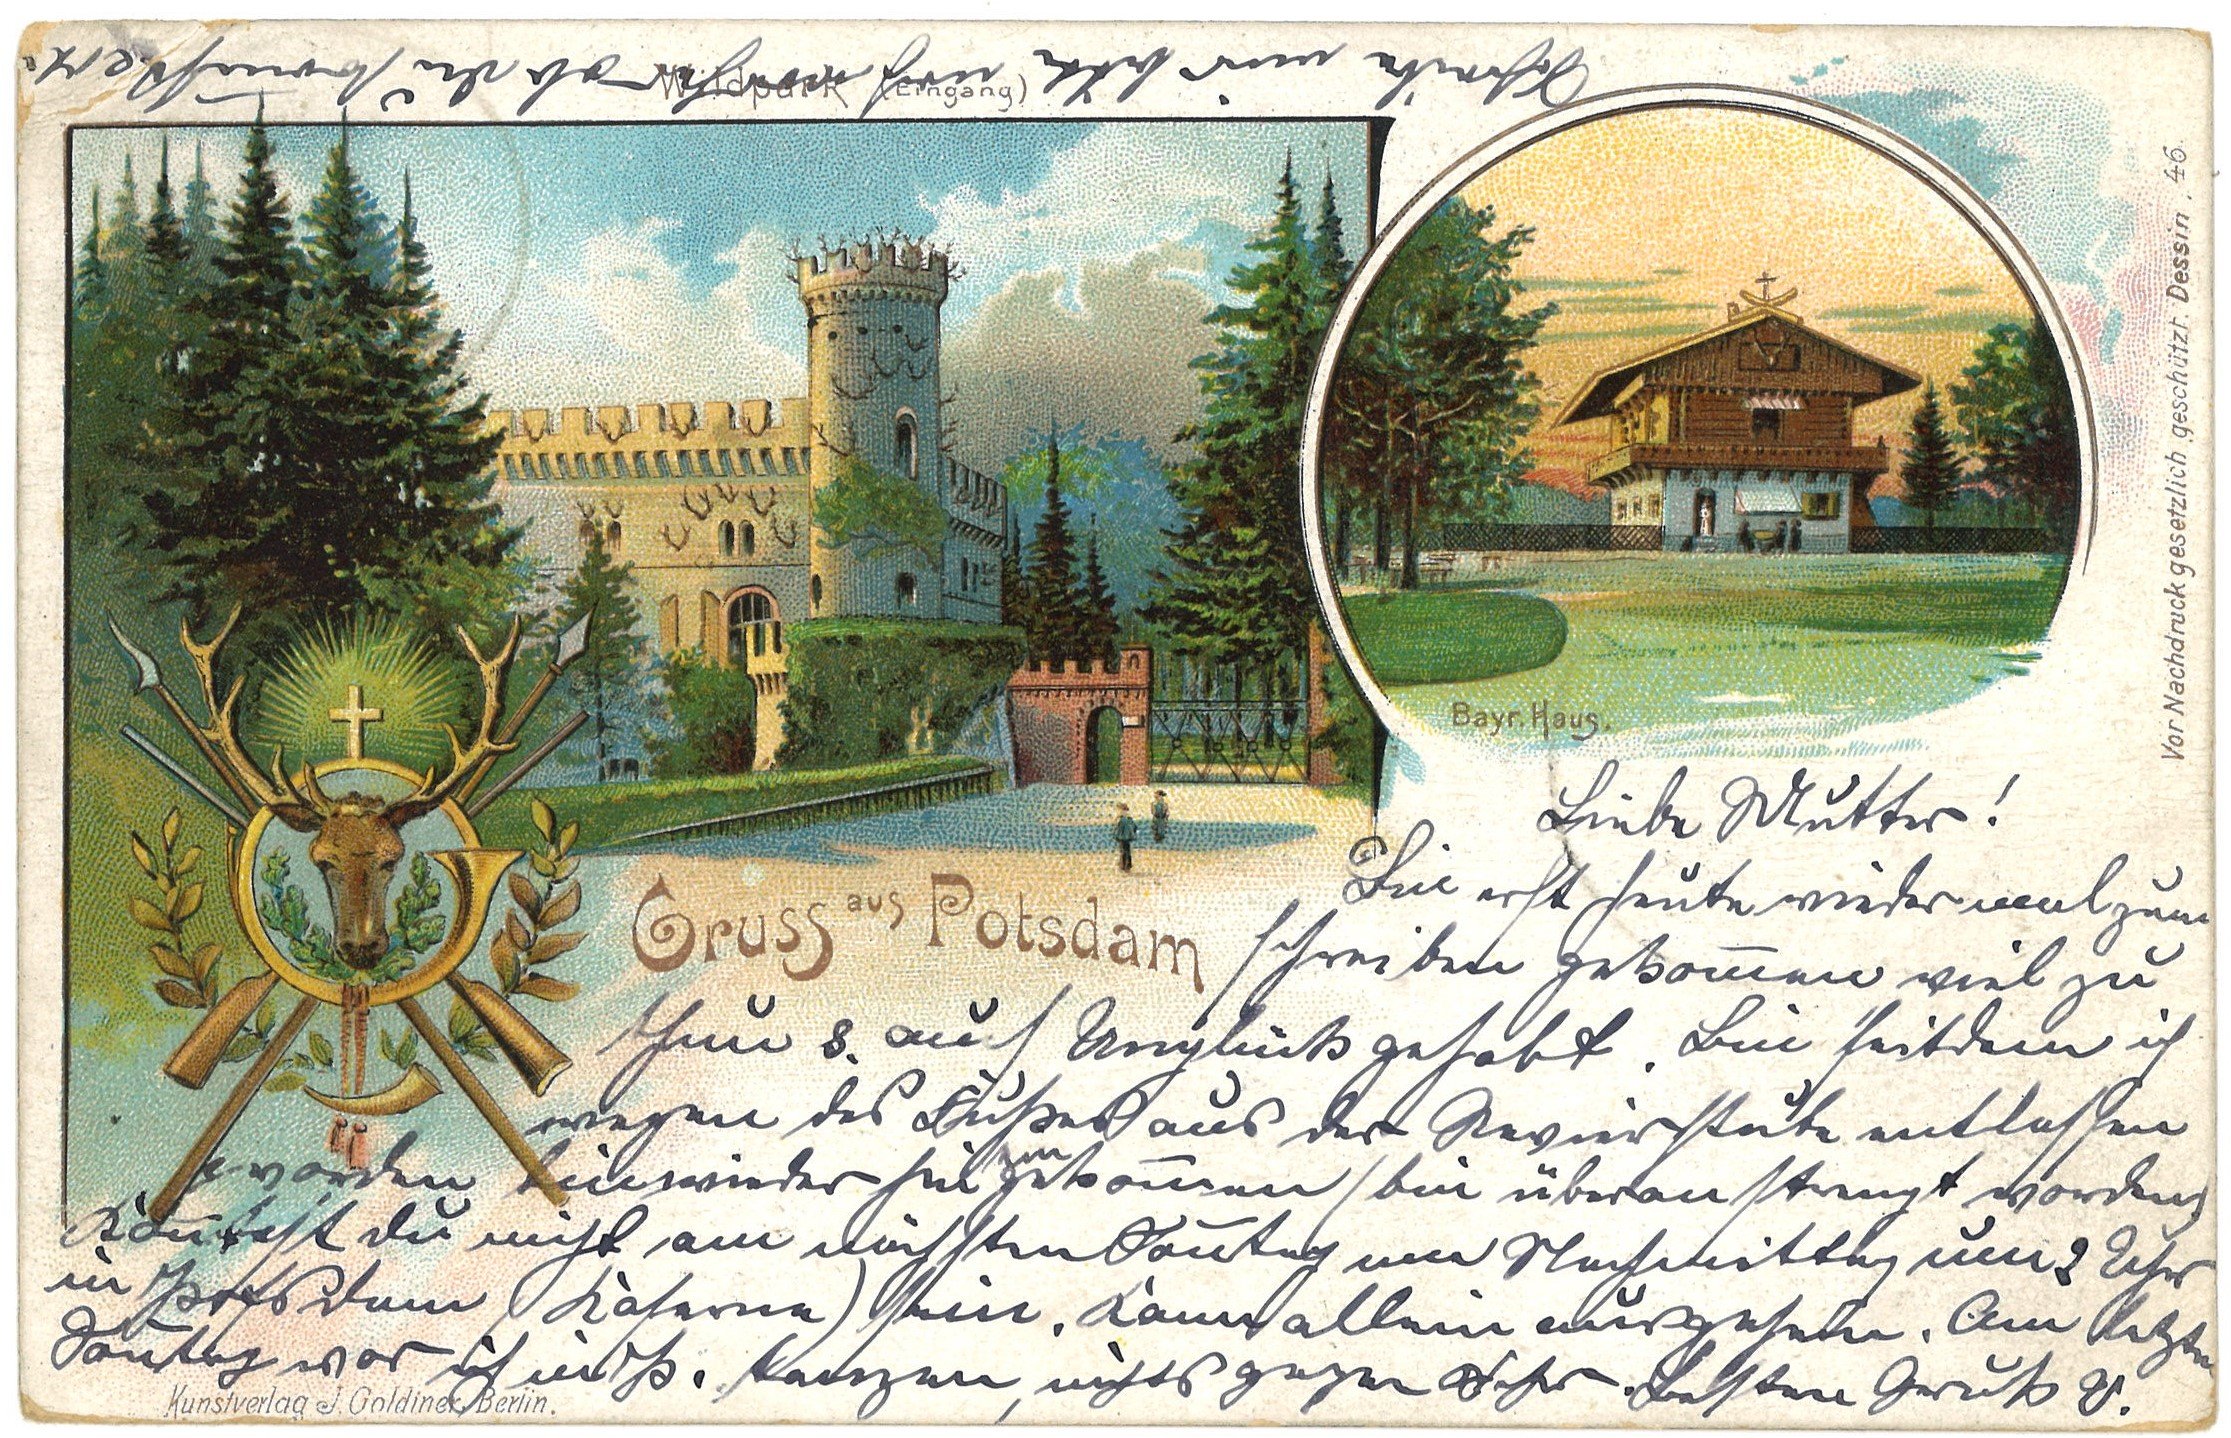 Potsdam-Wildpark: Zwei Ansichten (Landesgeschichtliche Vereinigung für die Mark Brandenburg e.V., Archiv CC BY)